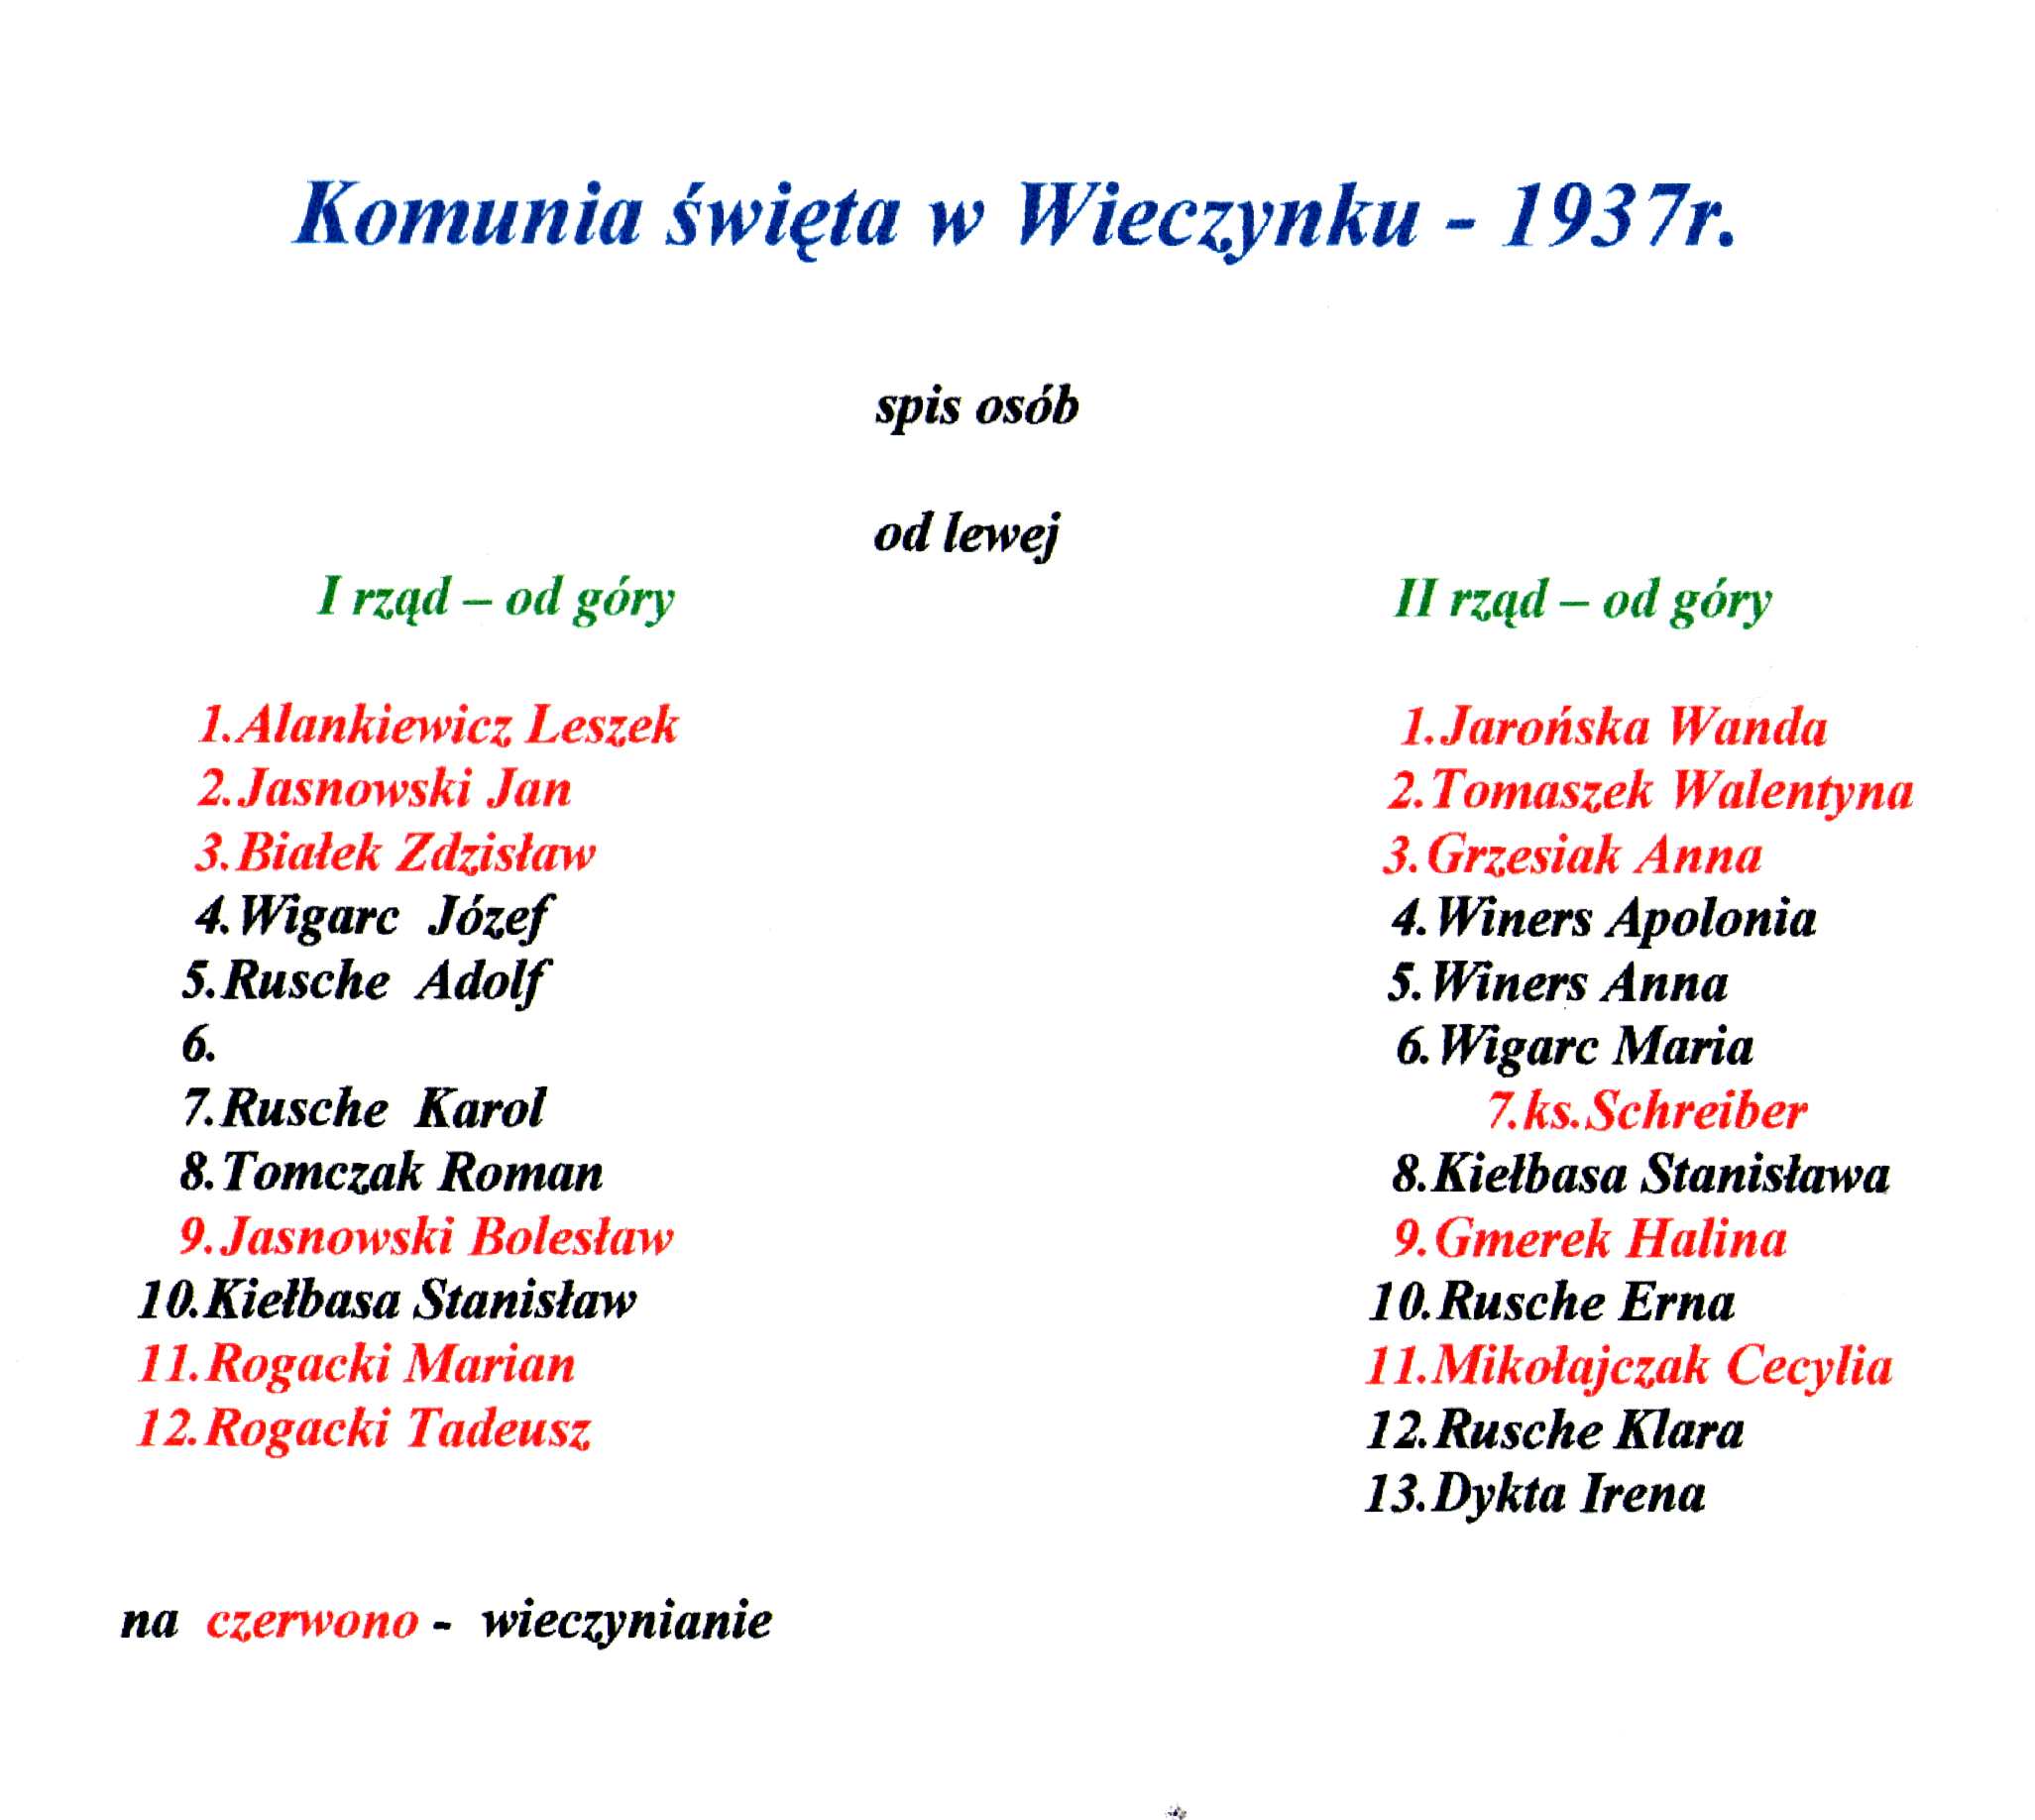 kronika wieczyna - aade-Spis osób - Komunia św. w Wieczynku1937r.jpg